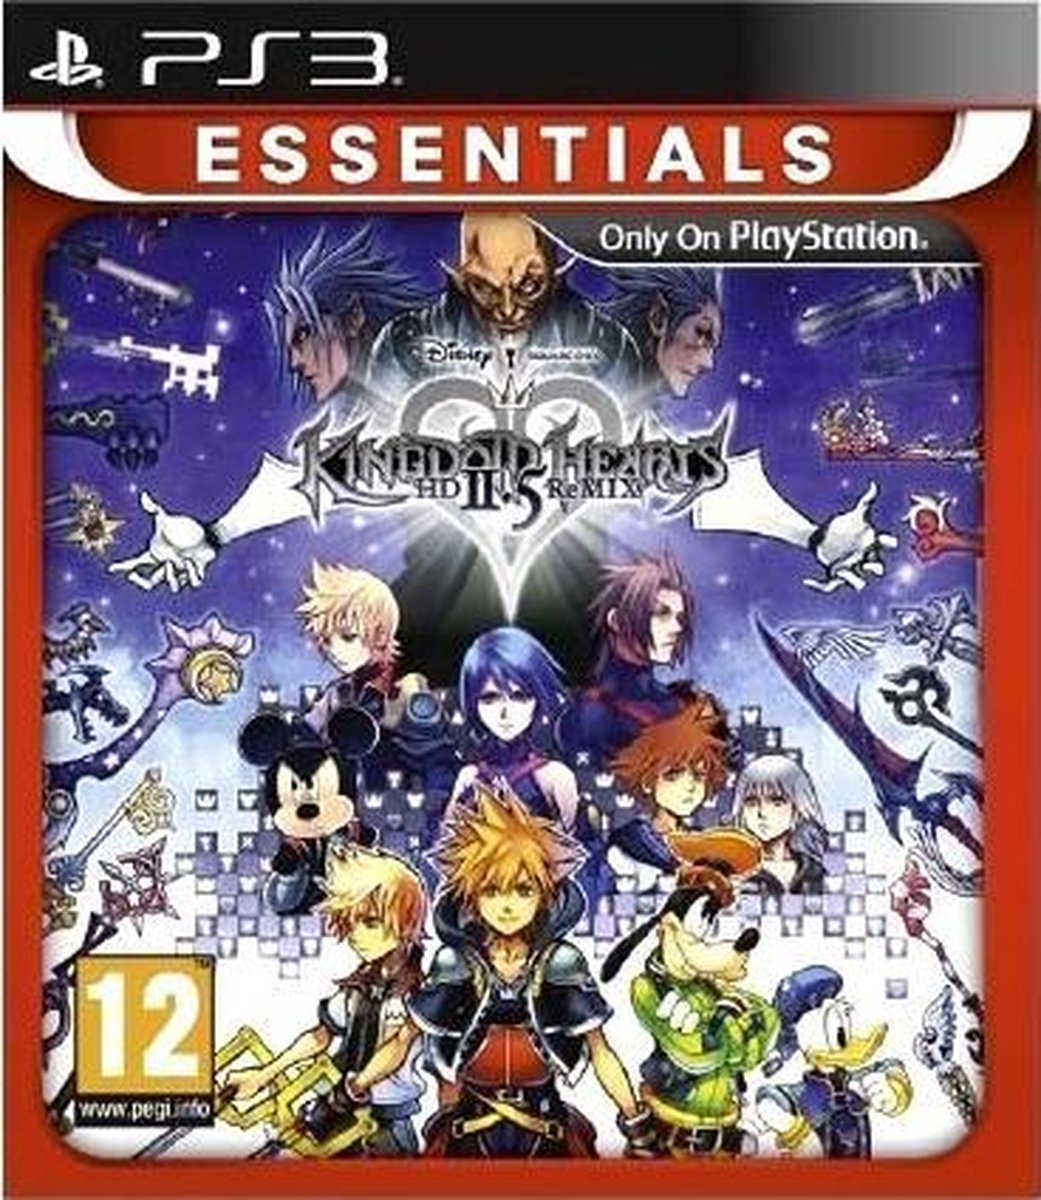 Kingdom Hearts HD 2.5 Remix (Essentials) /PS3 - Square Enix